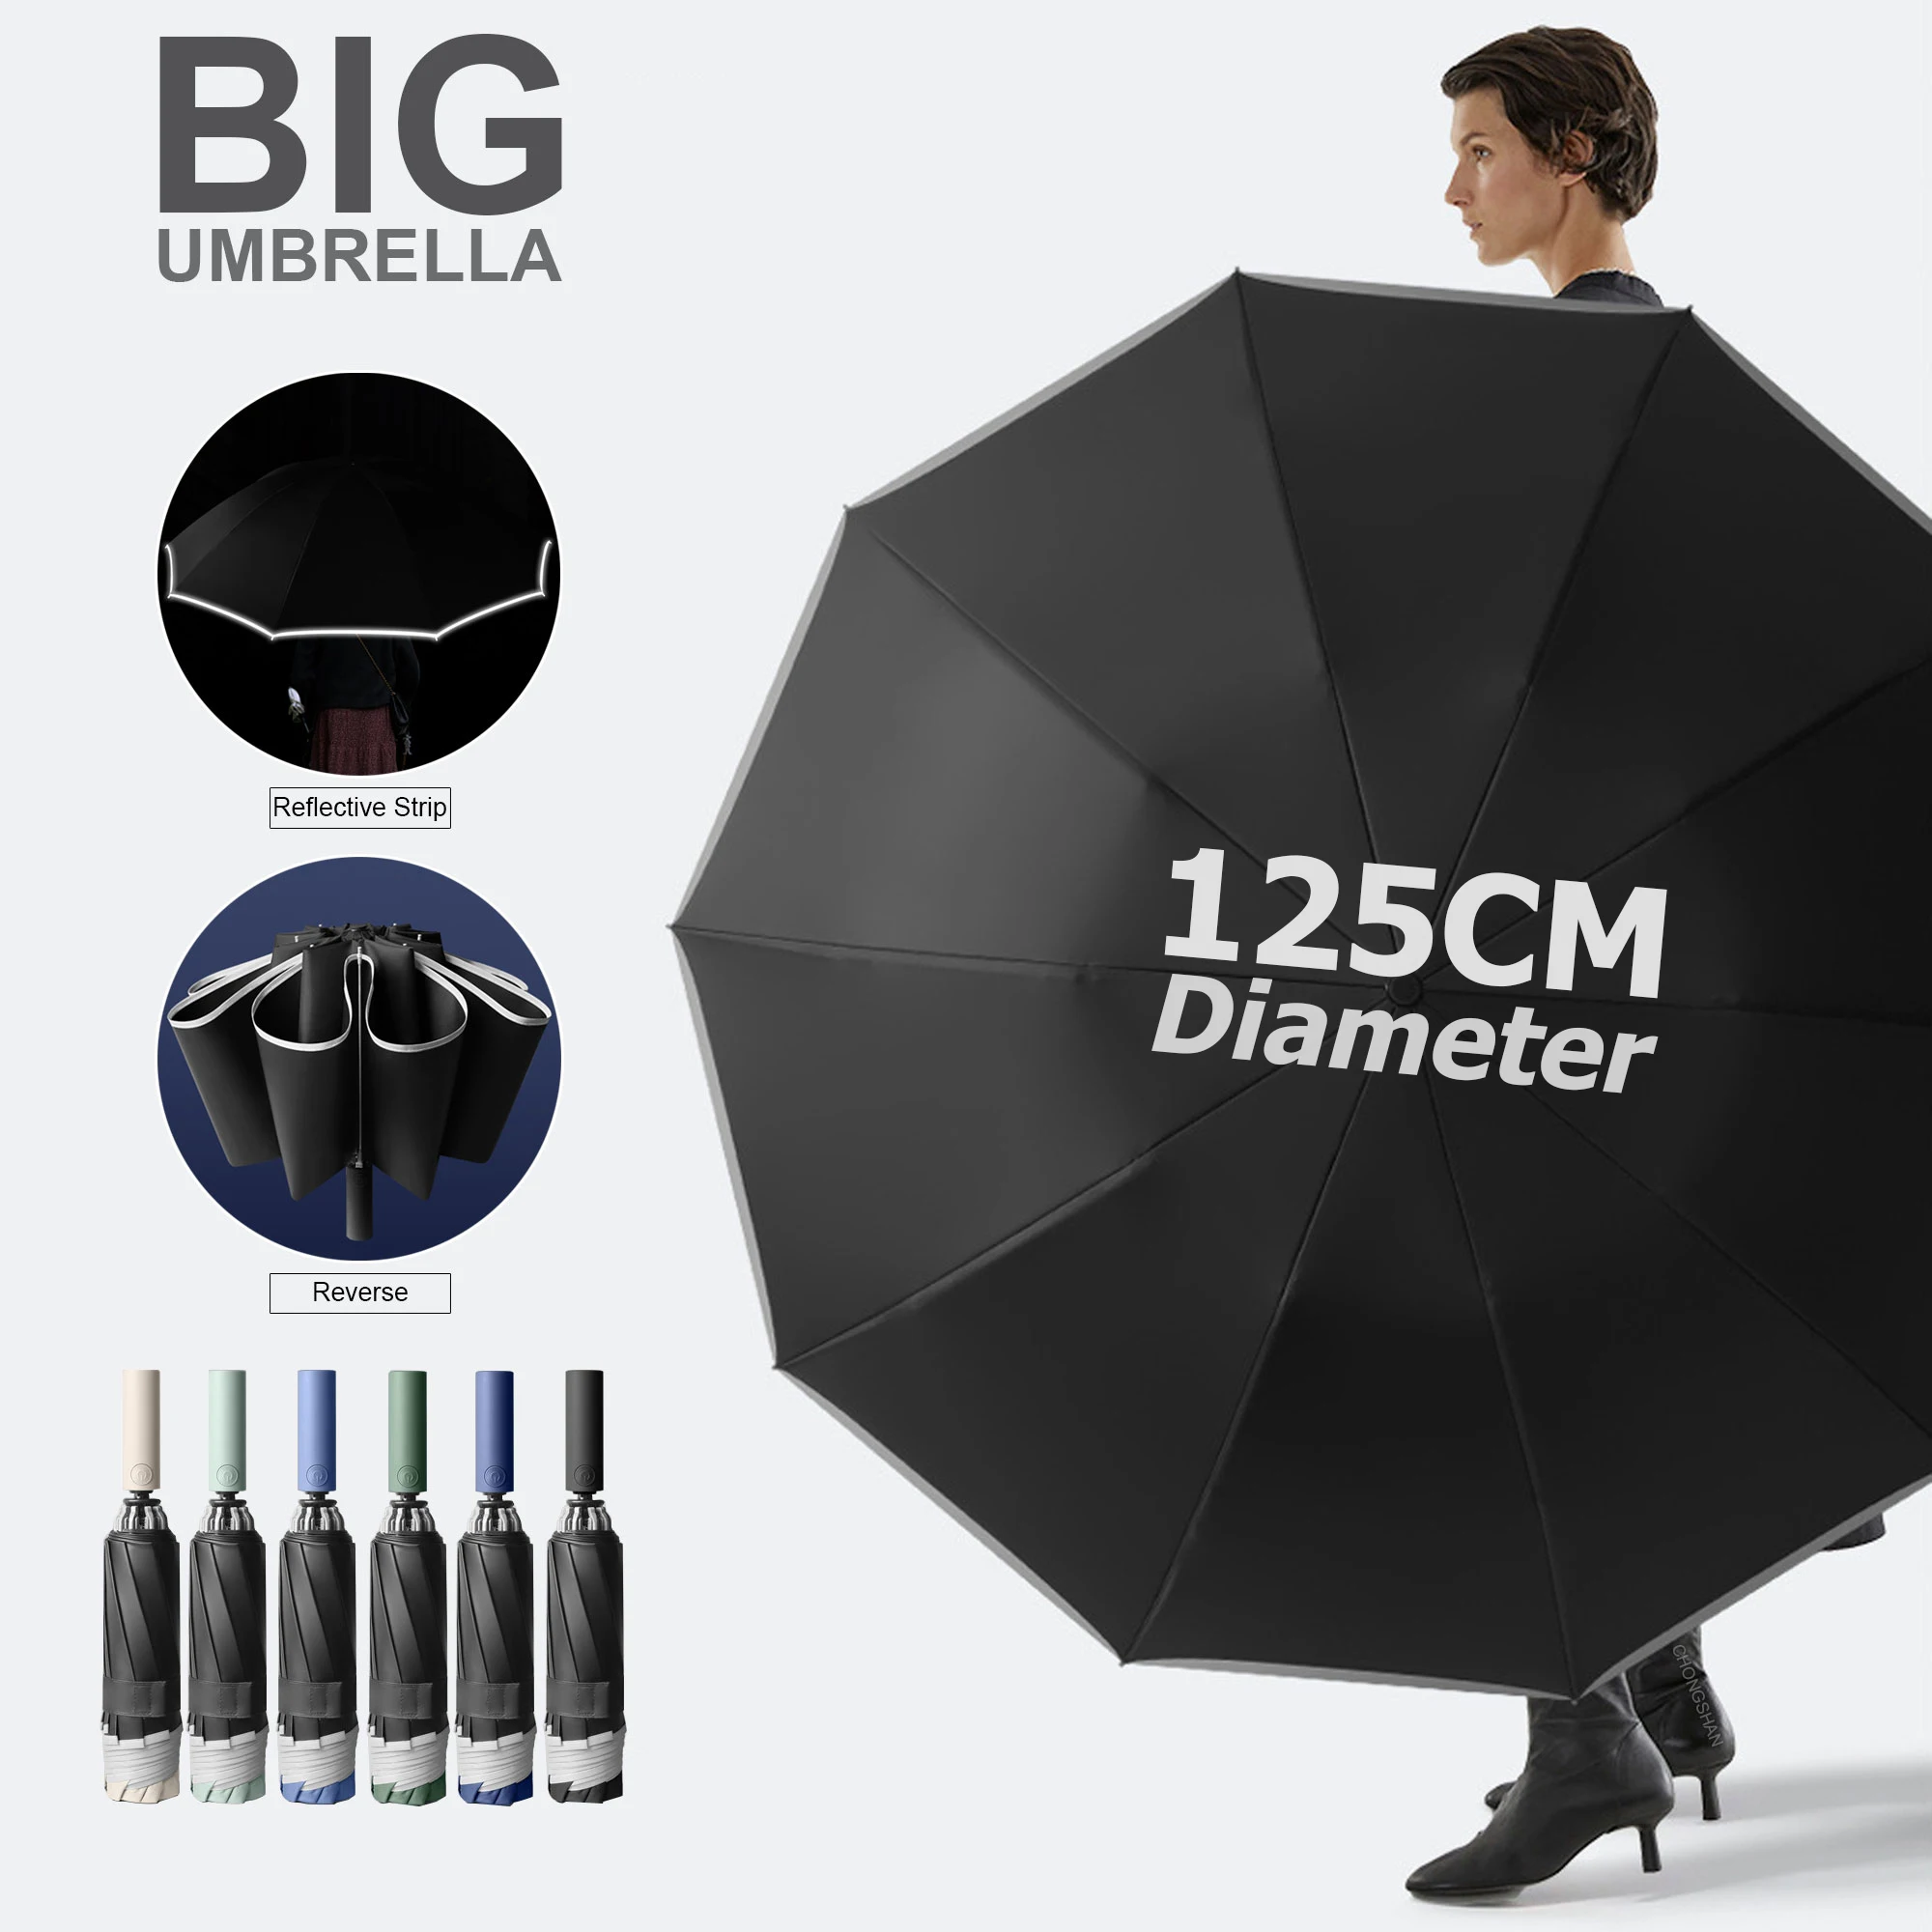 

Автоматический складной зонт для мужчин, очень большой, 125 см, водонепроницаемый, ветрозащитный, прочный, светоотражающий, усиленный зонтик для гольфа